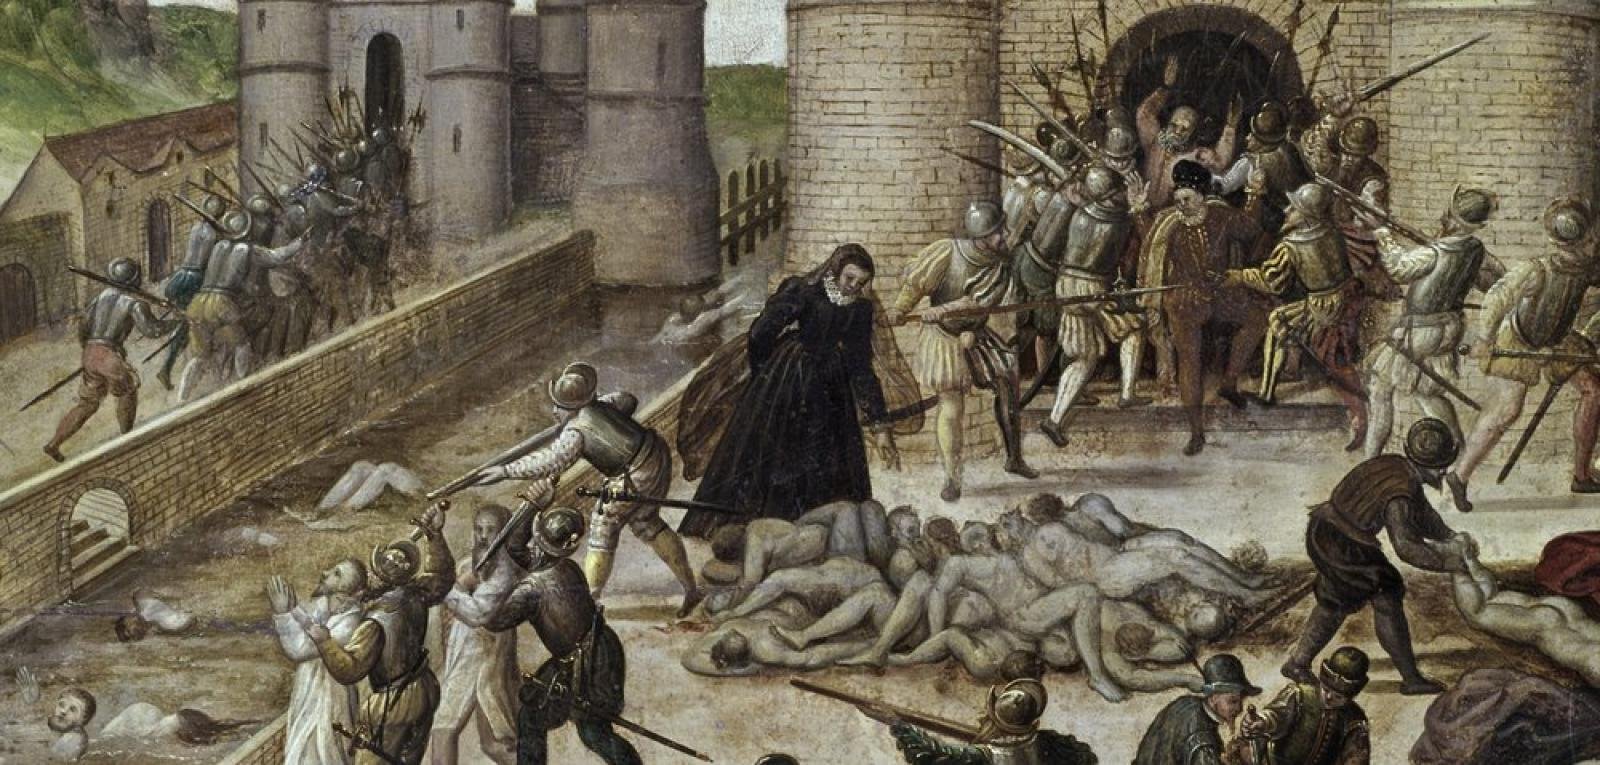 Раздаются возгласы. Варфоломеевская ночь во Франции 24 августа 1572 г. 1572 Варфоломеевская ночь. 24 Августа 1572 Варфоломеевская ночь резня гугенотов во Франции.